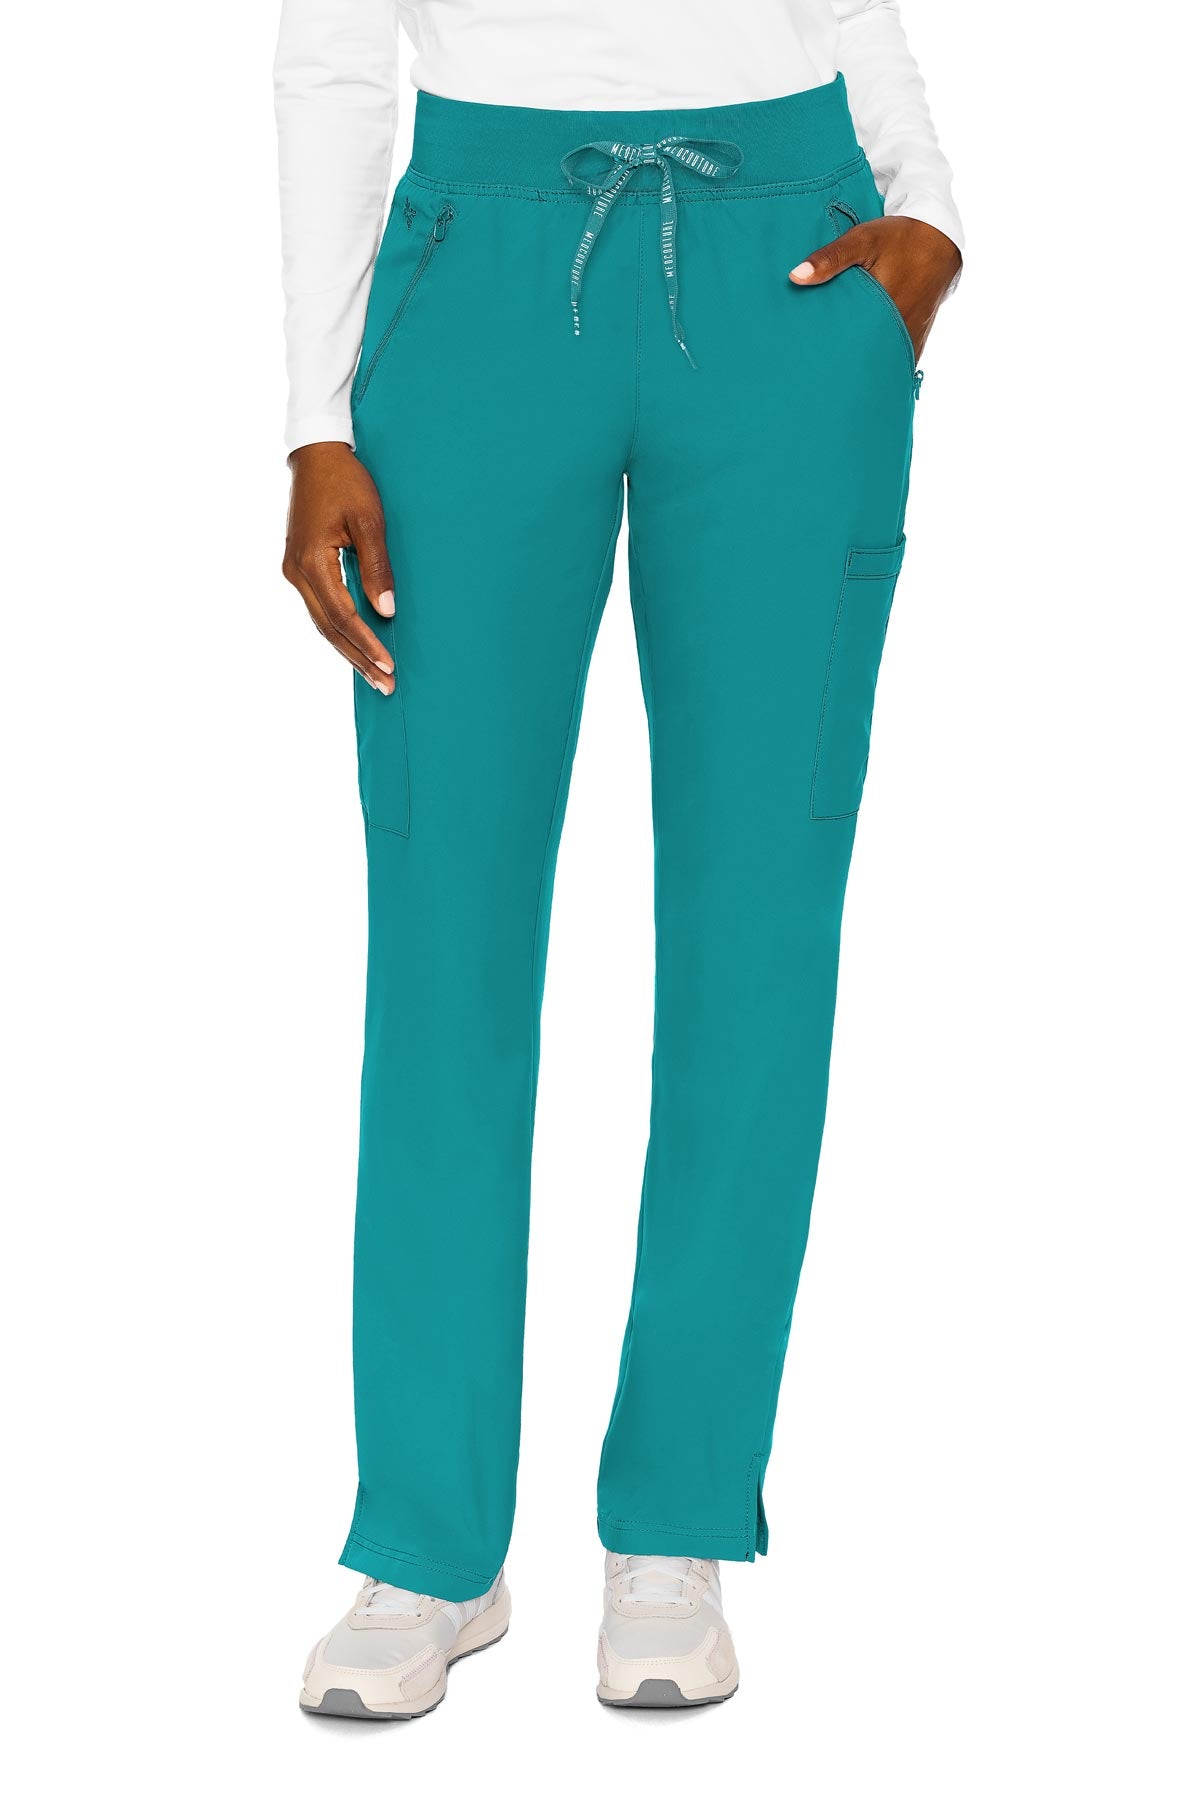 MedCouture Insight Women's Zipper Pant